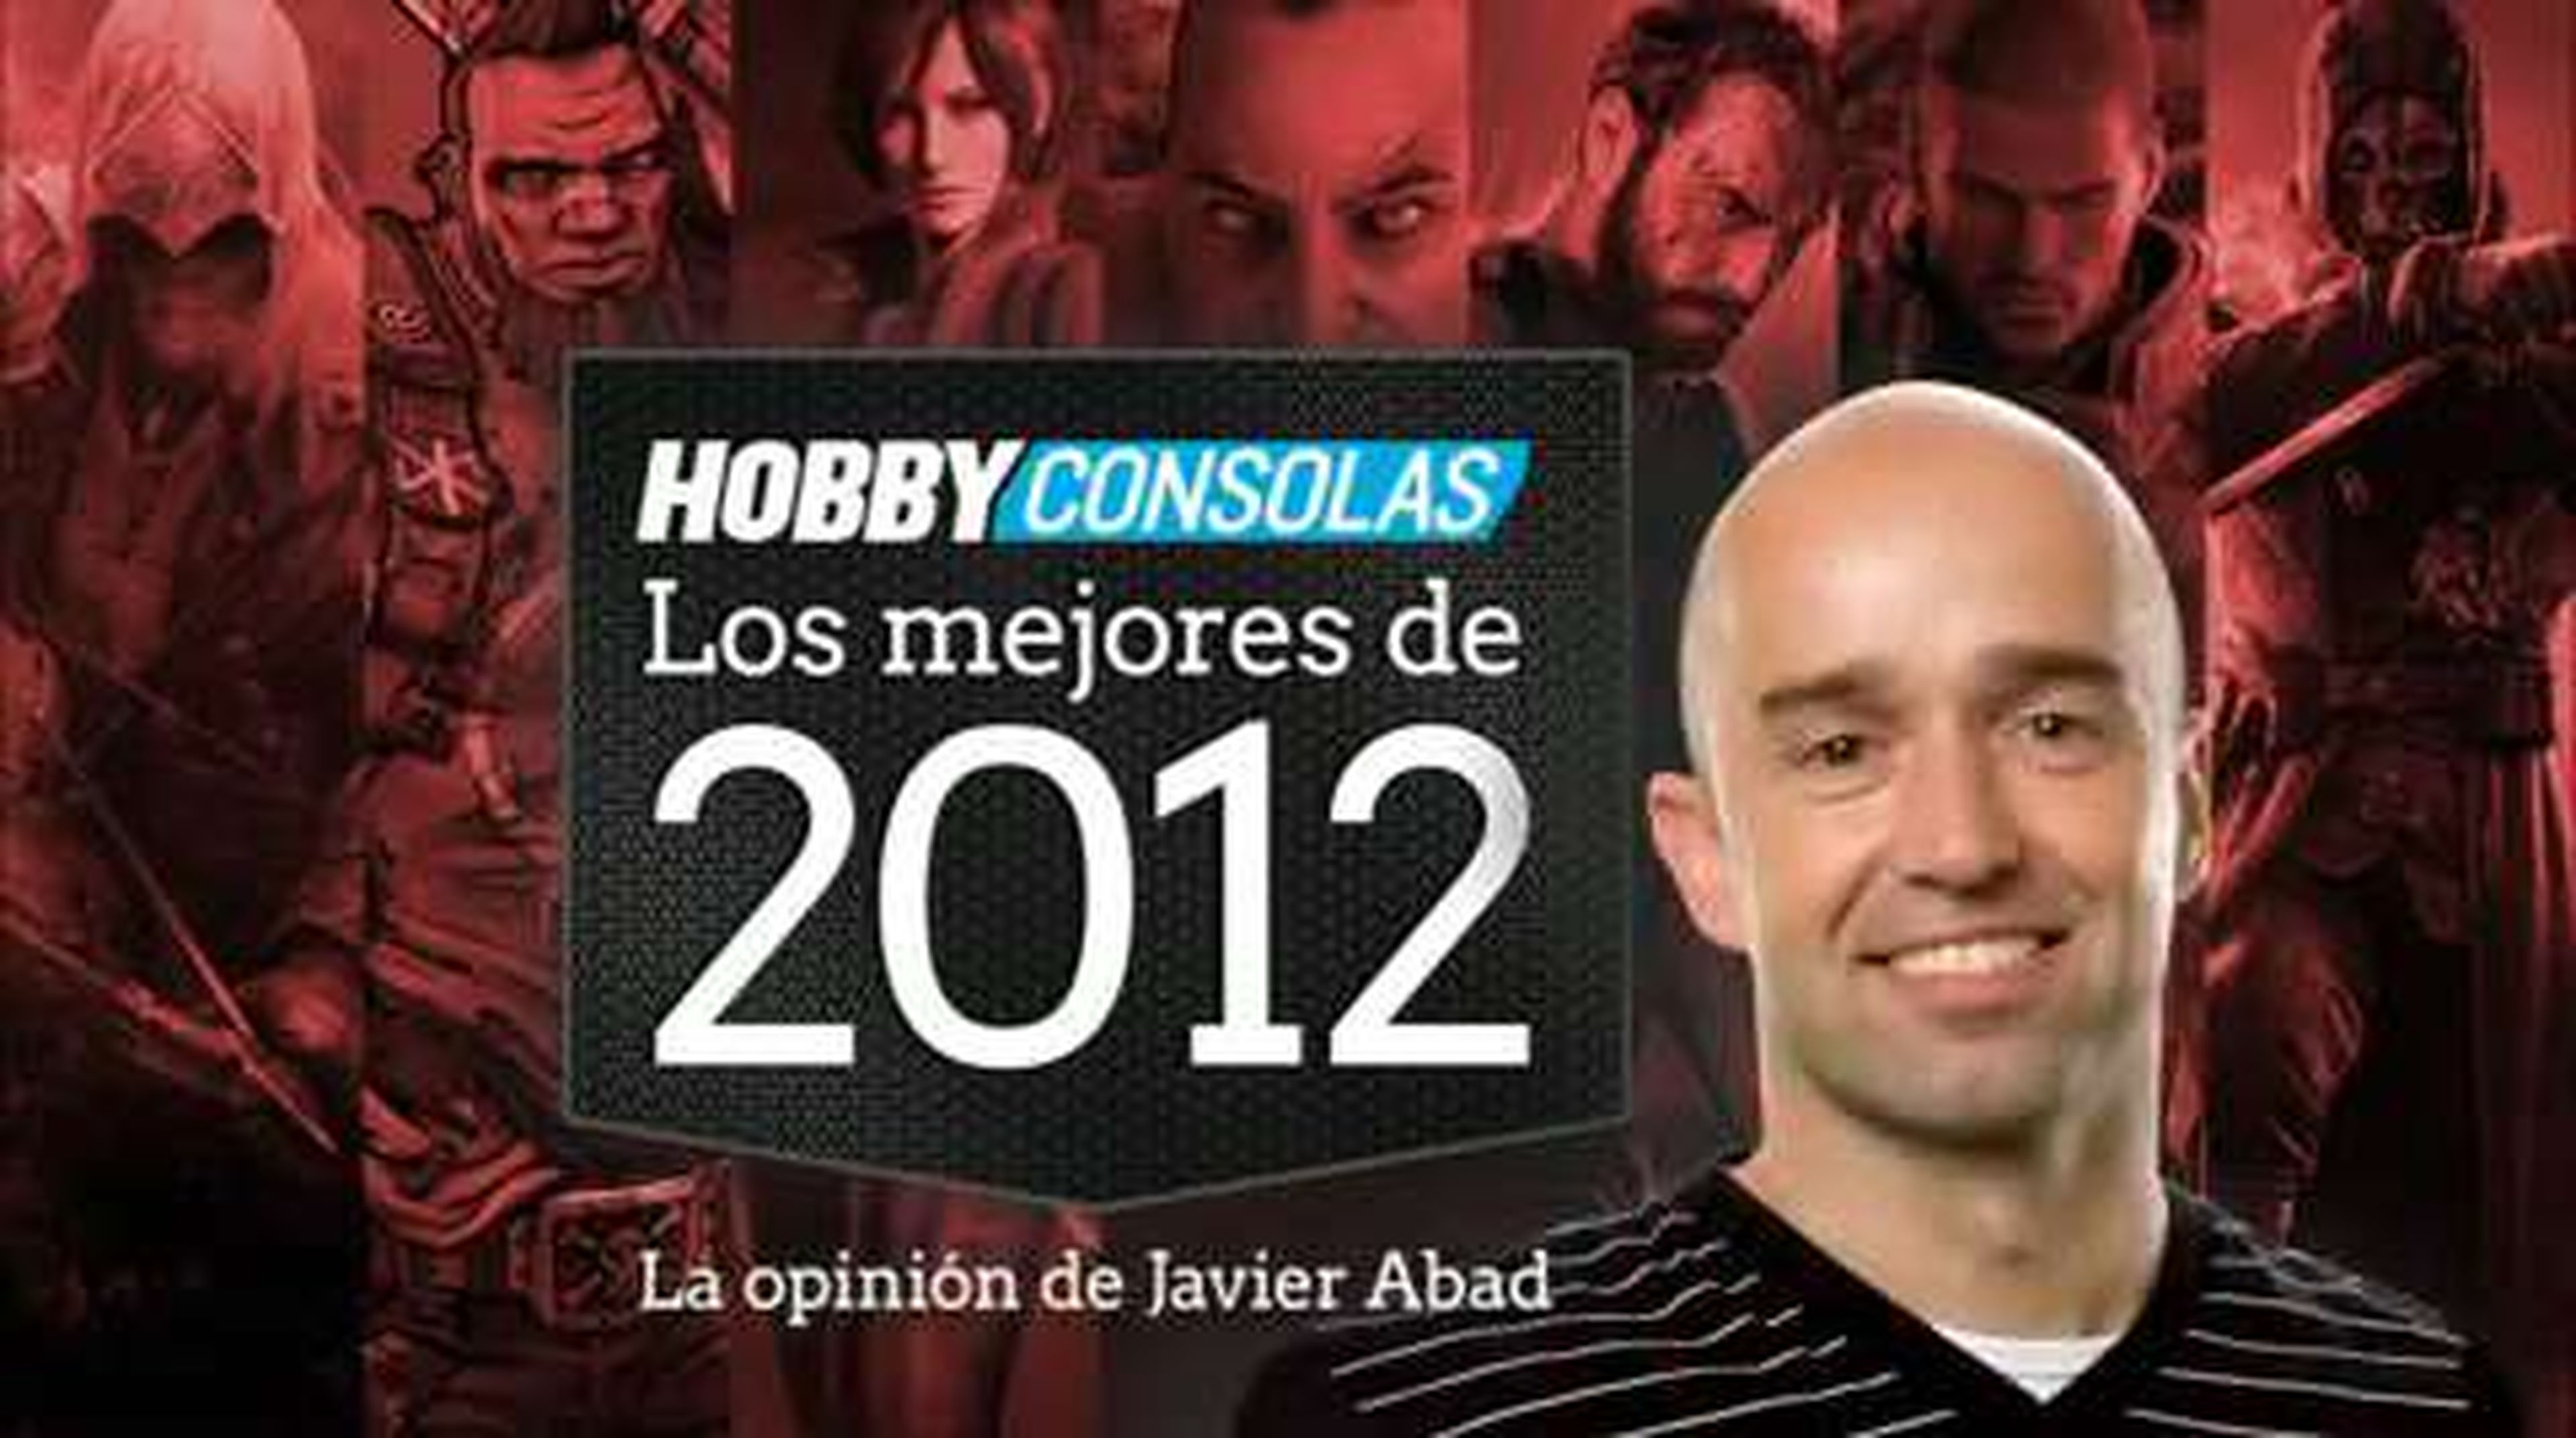 Lo mejor de 2012 (HD) Javier Abad en HobbyConsolas.com